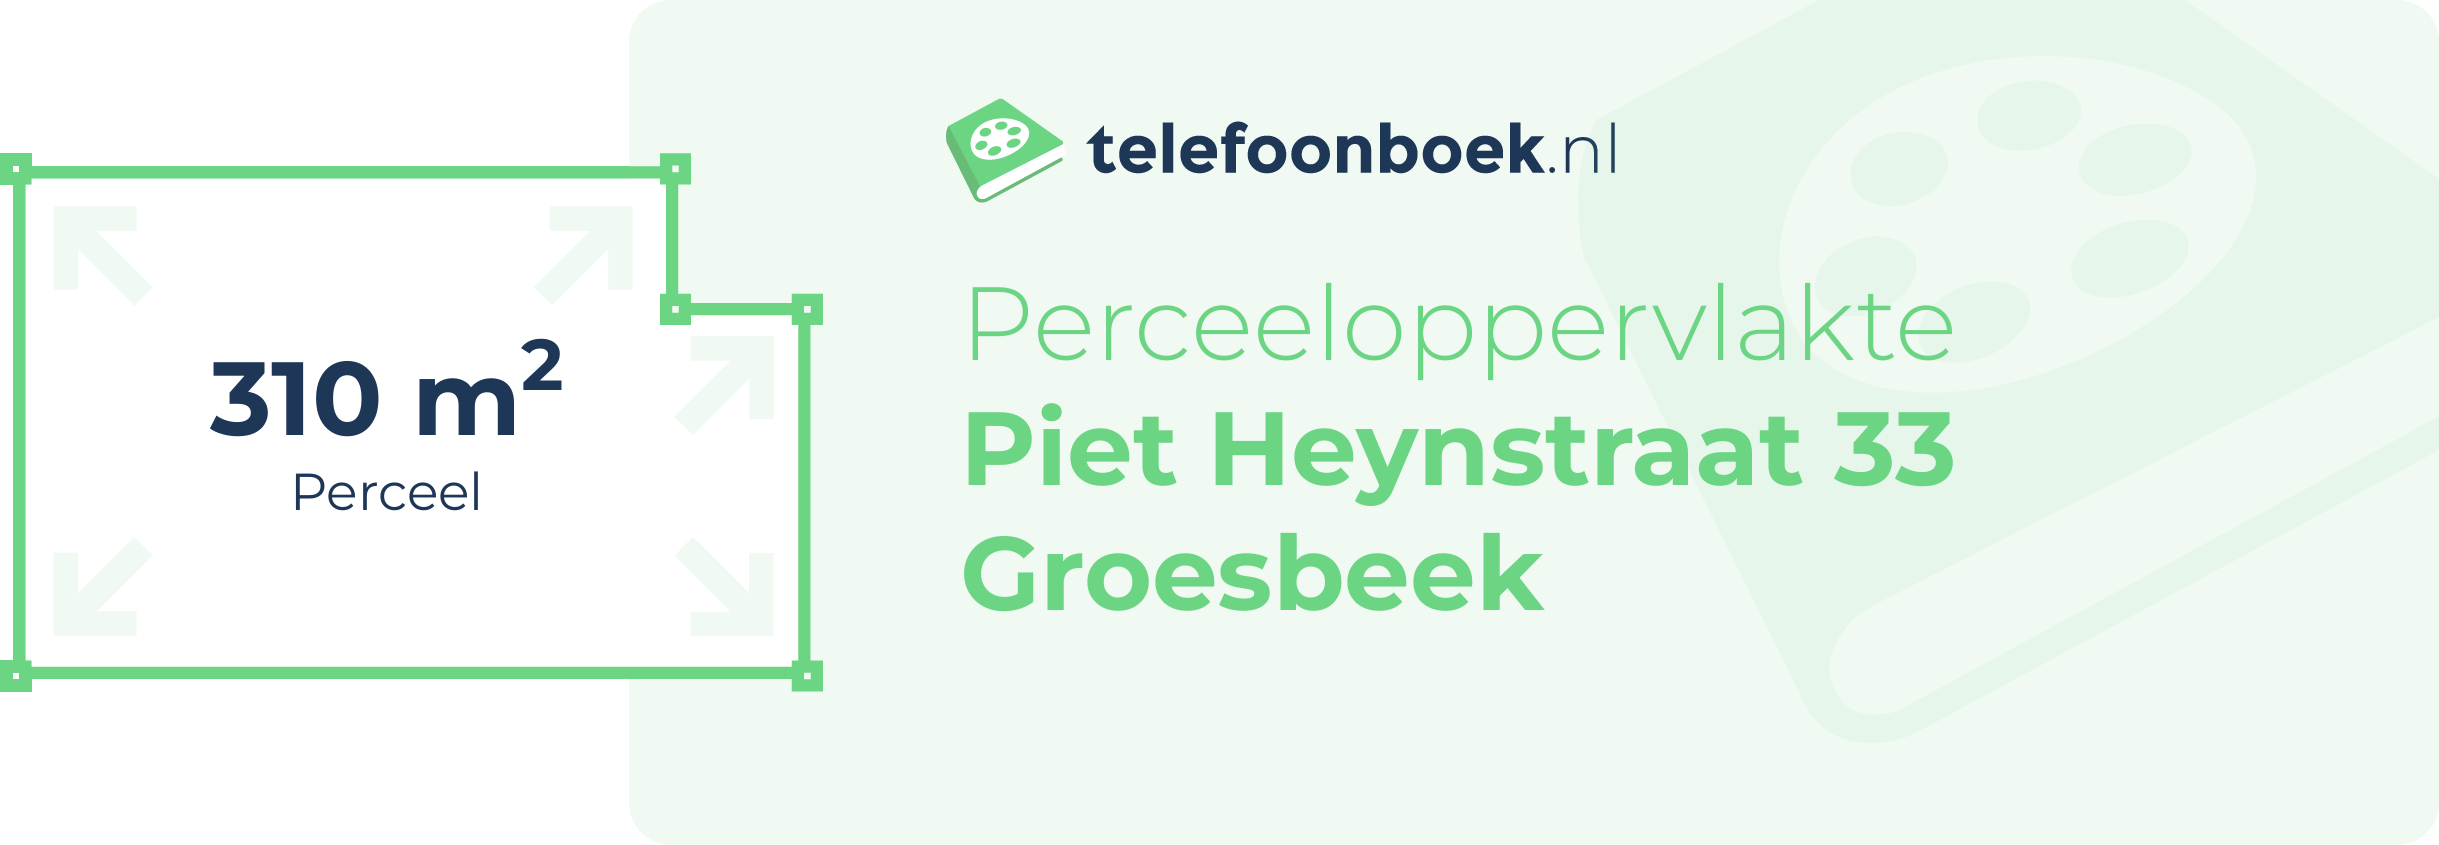 Perceeloppervlakte Piet Heynstraat 33 Groesbeek